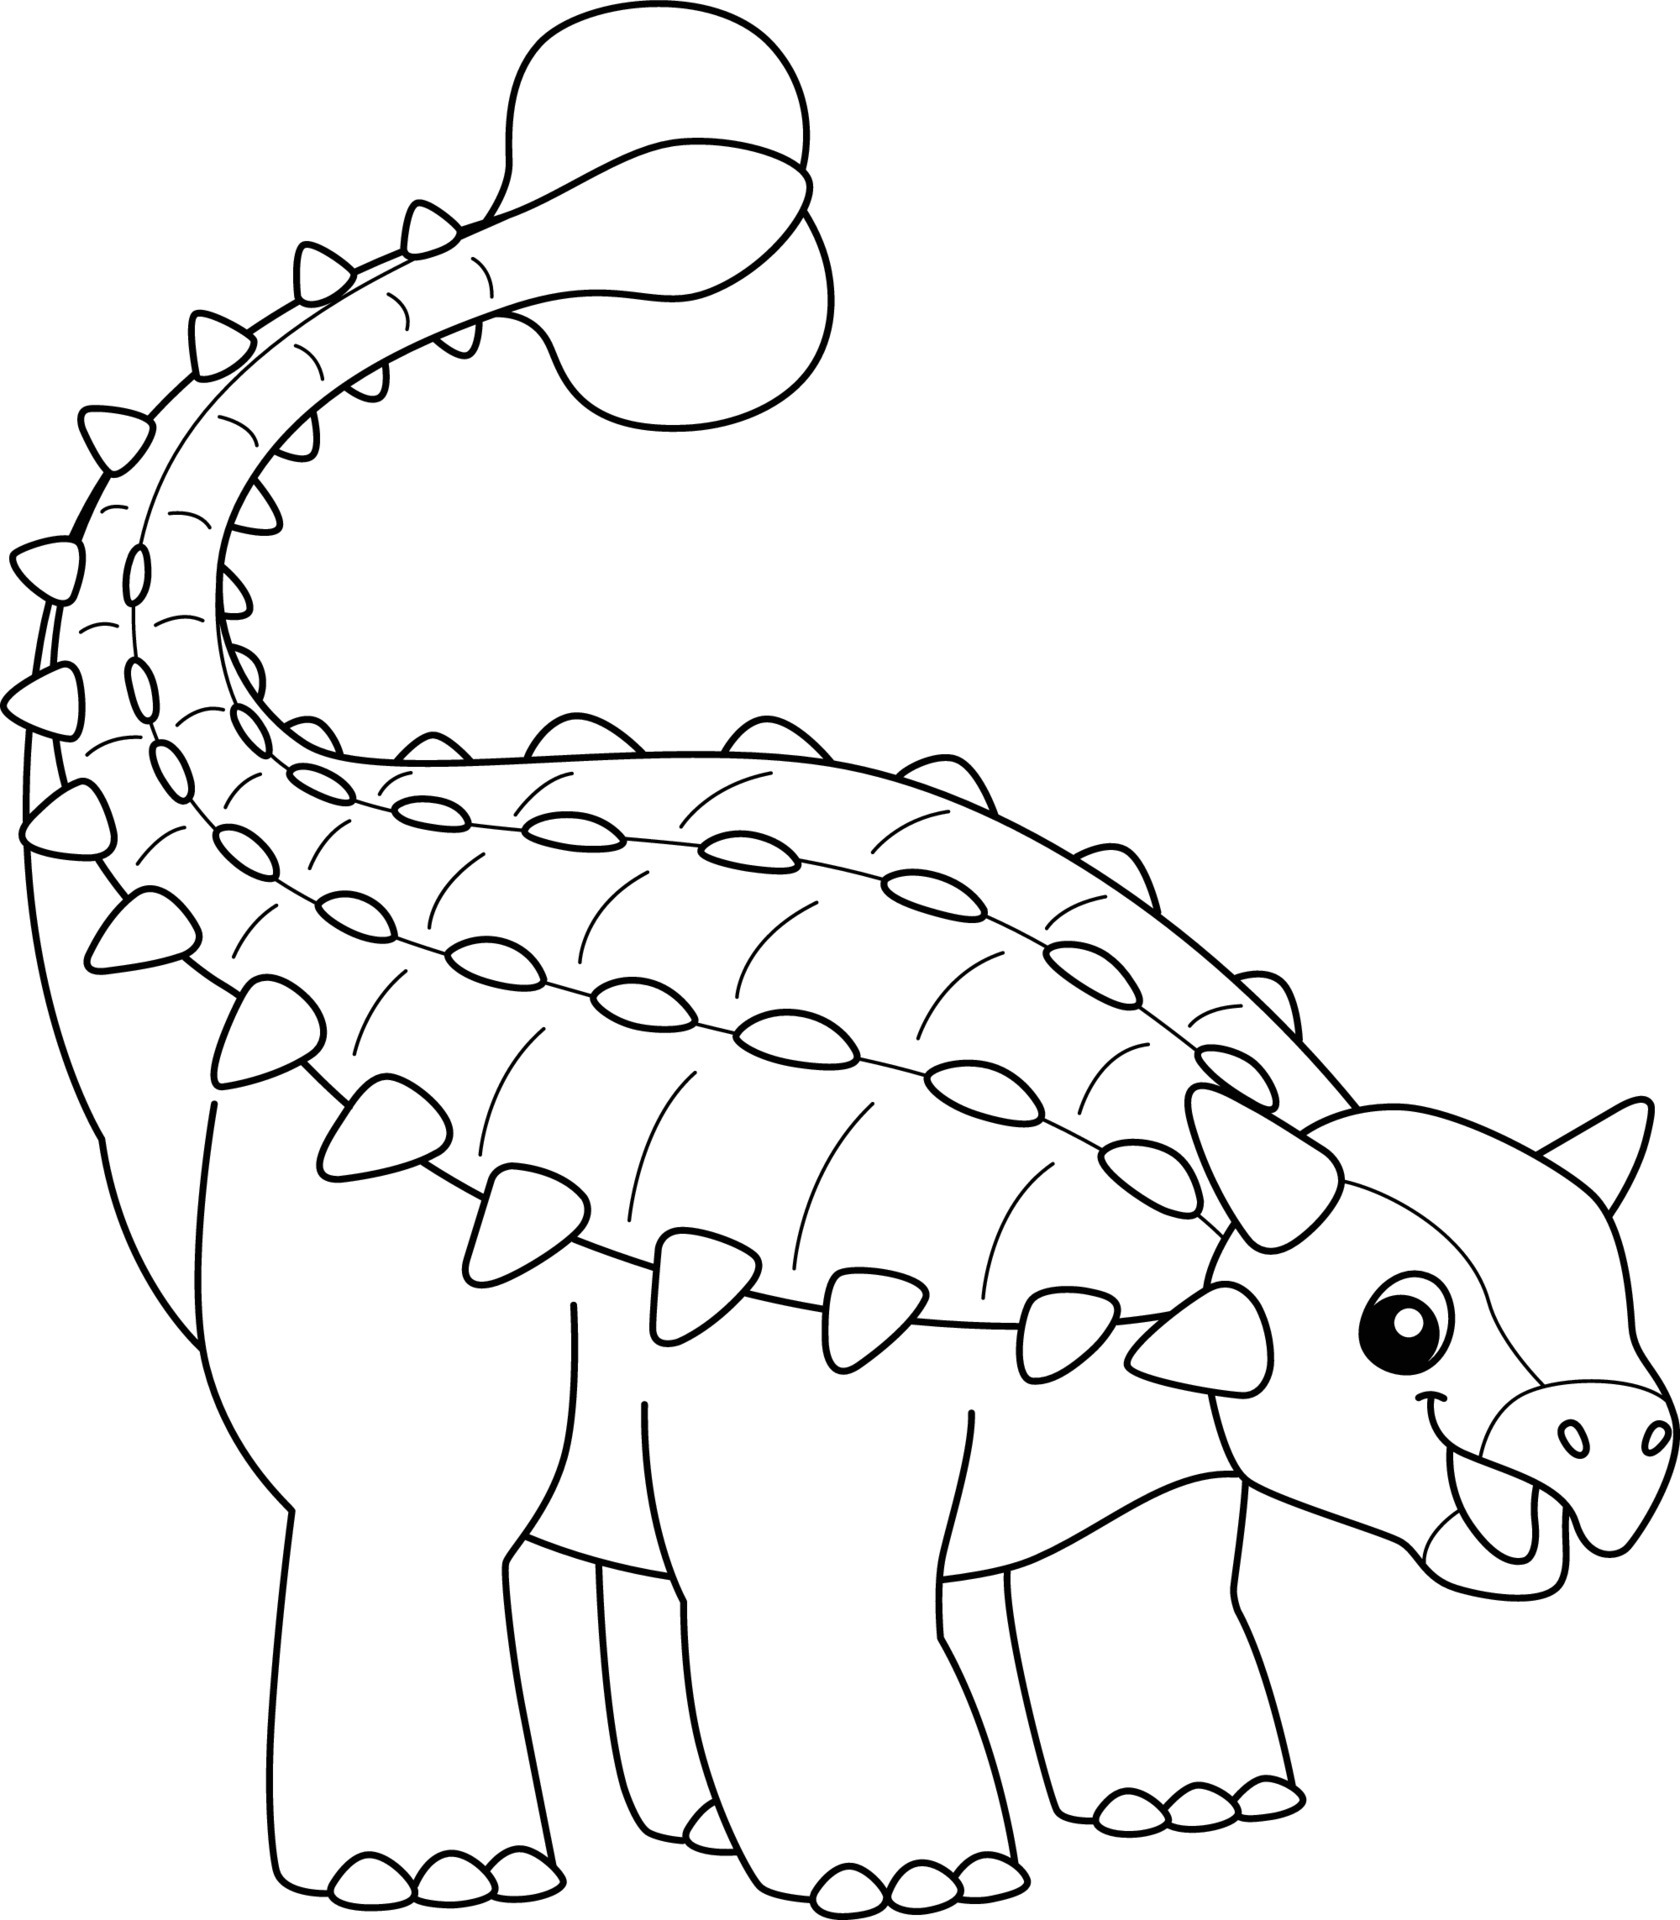 tiranossauro para colorir página isolada para crianças 6458045